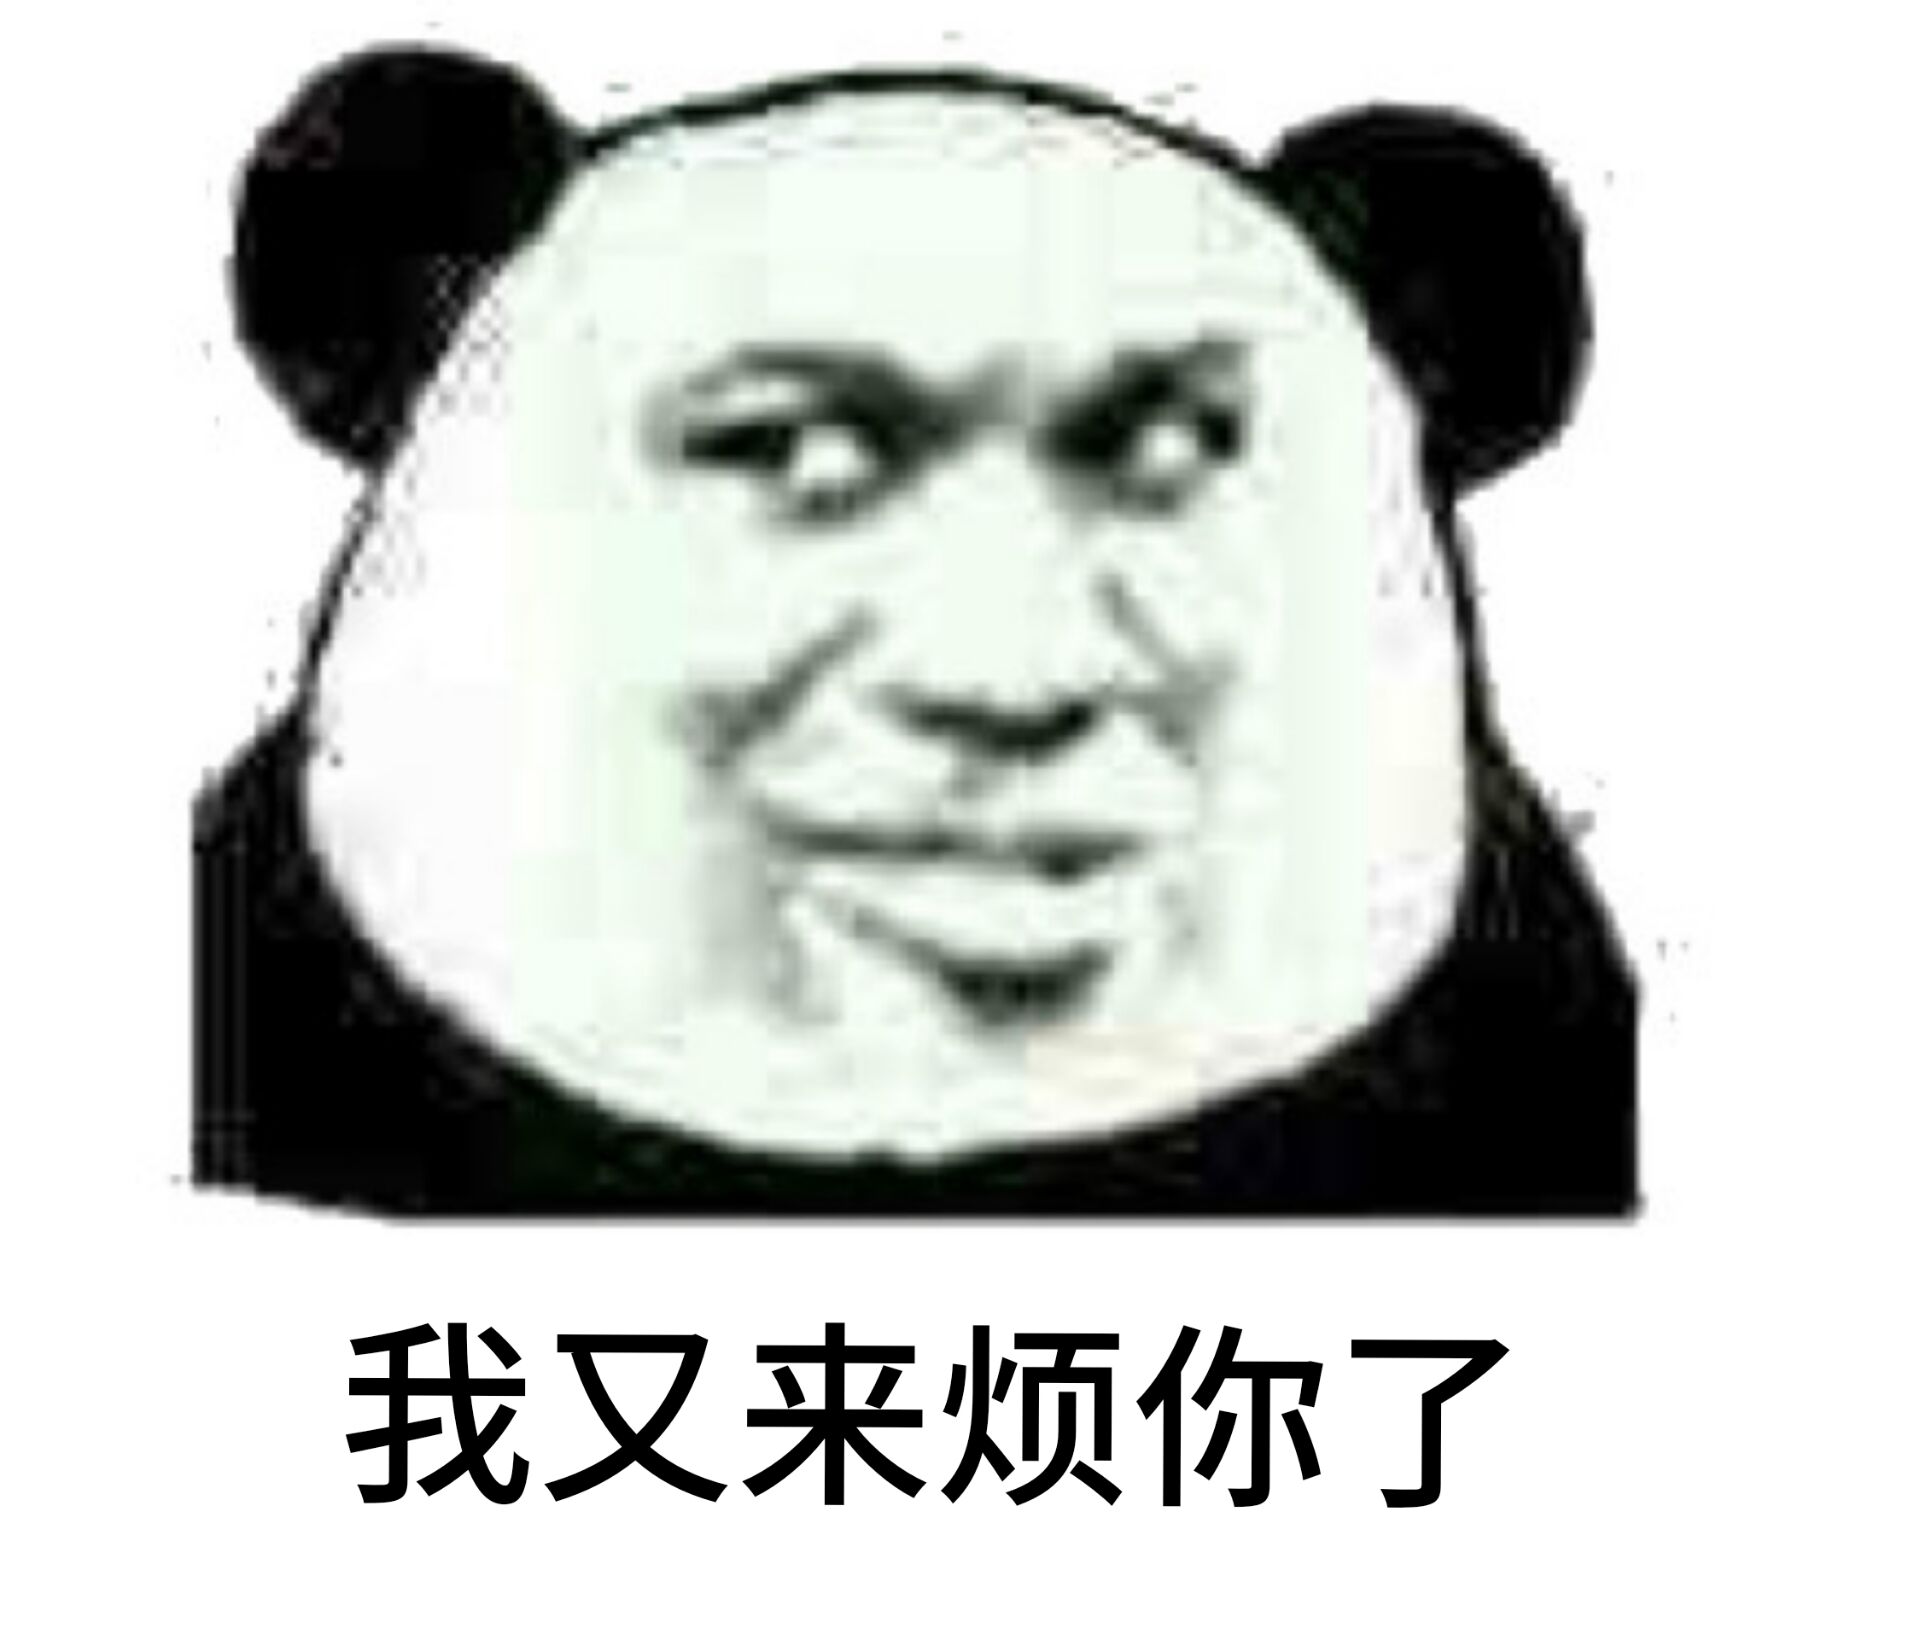 沙雕熊猫头表情包 - 斗图表情包 - 斗图神器 - adoutu.com